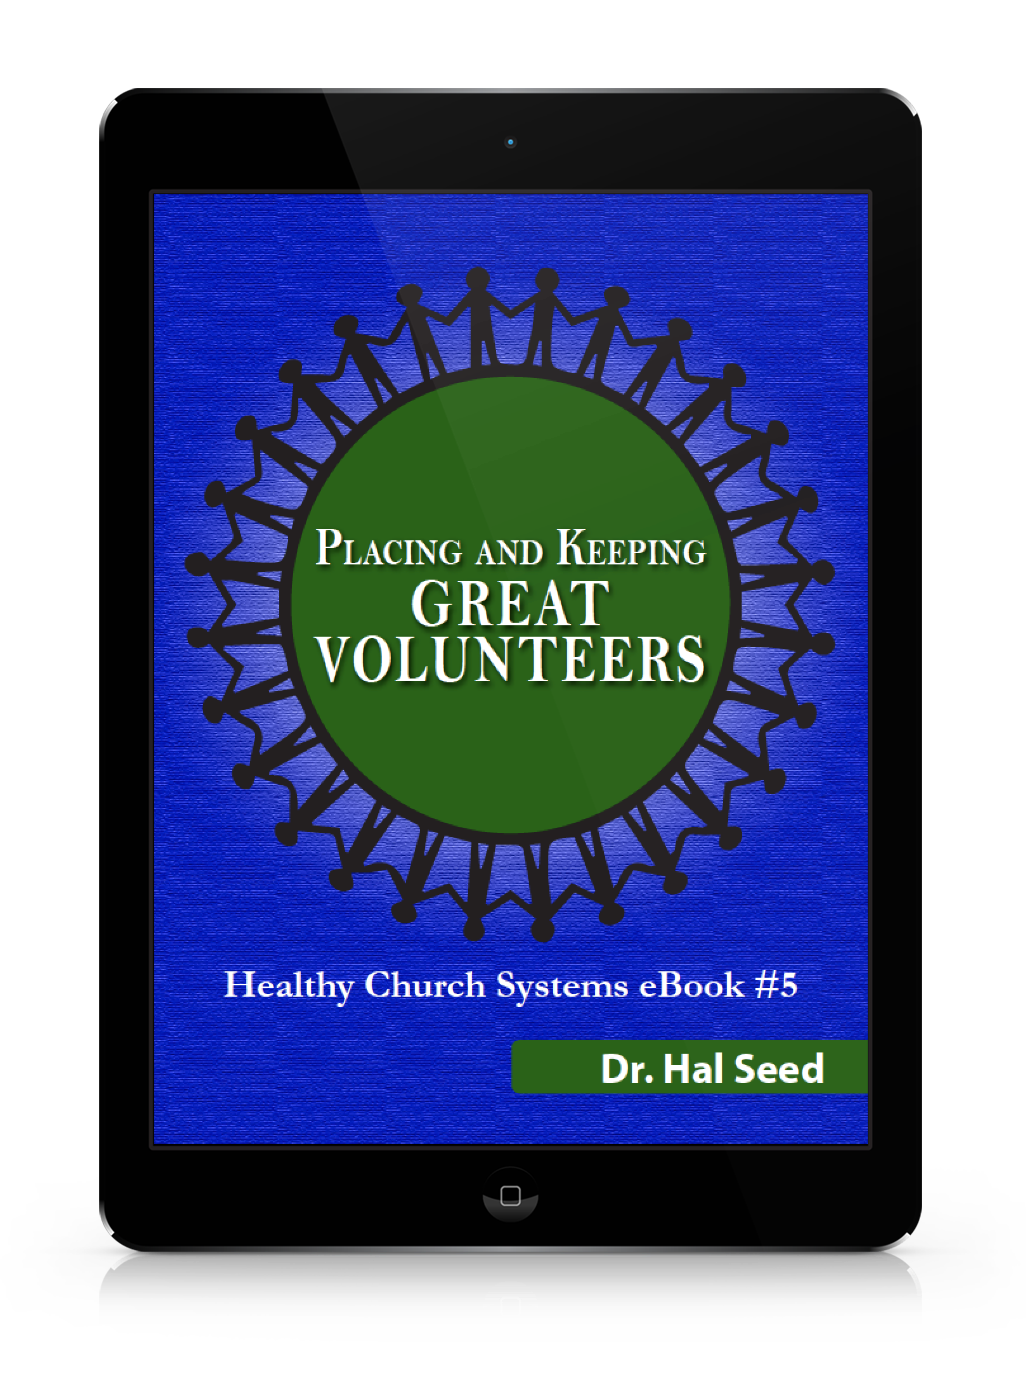 Ebook #5: Placing and Keeping Great Volunteers